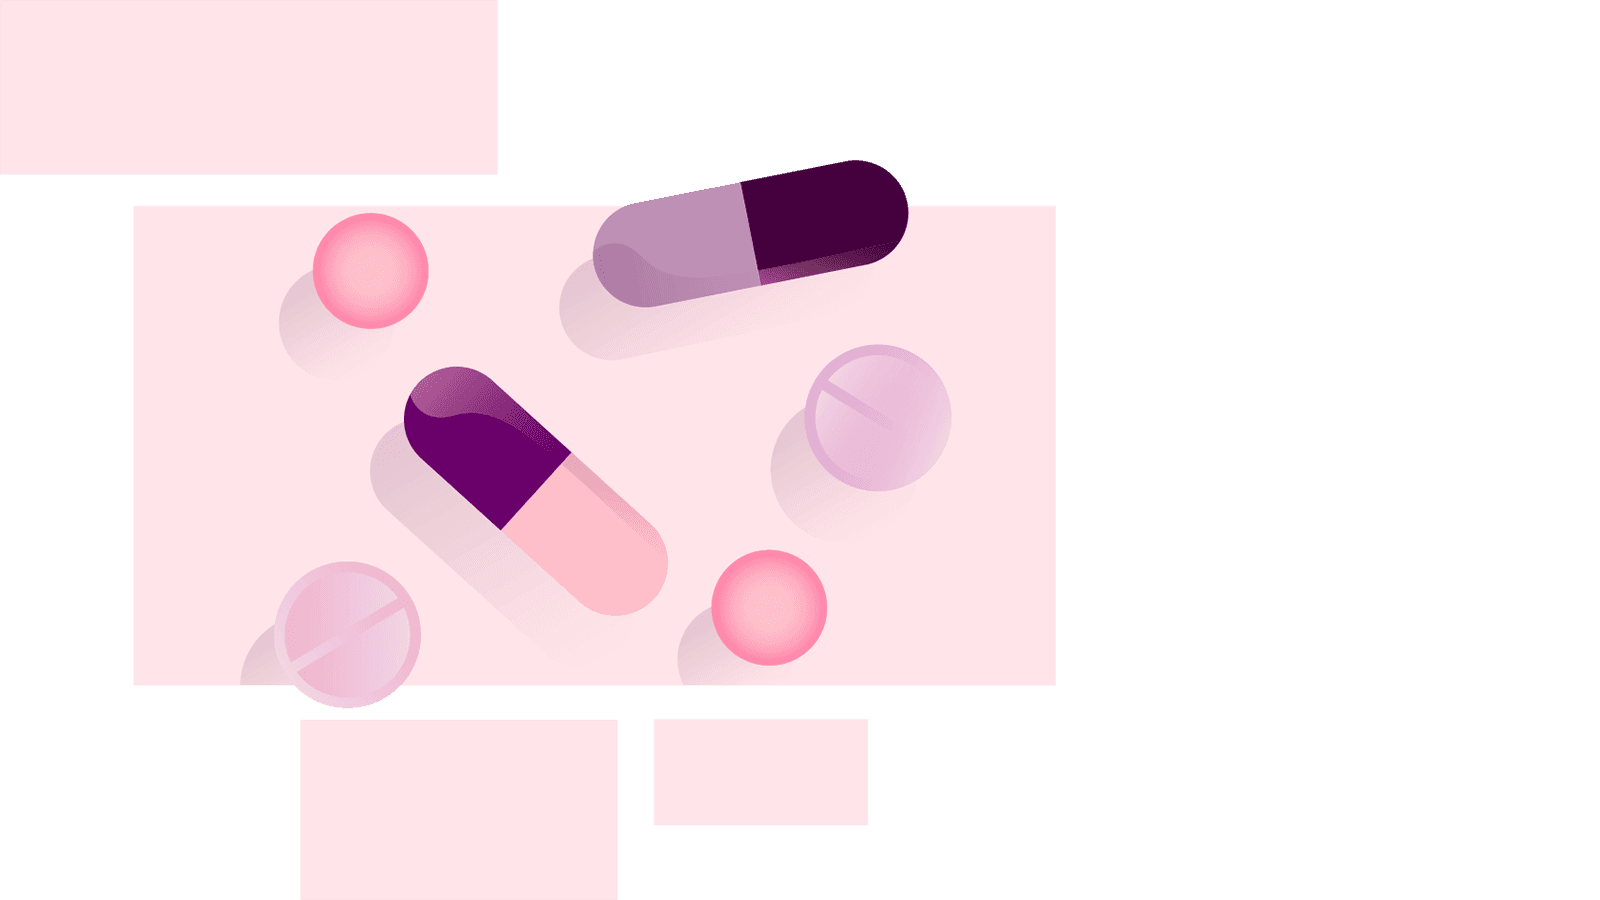 Illustration of a range of medication